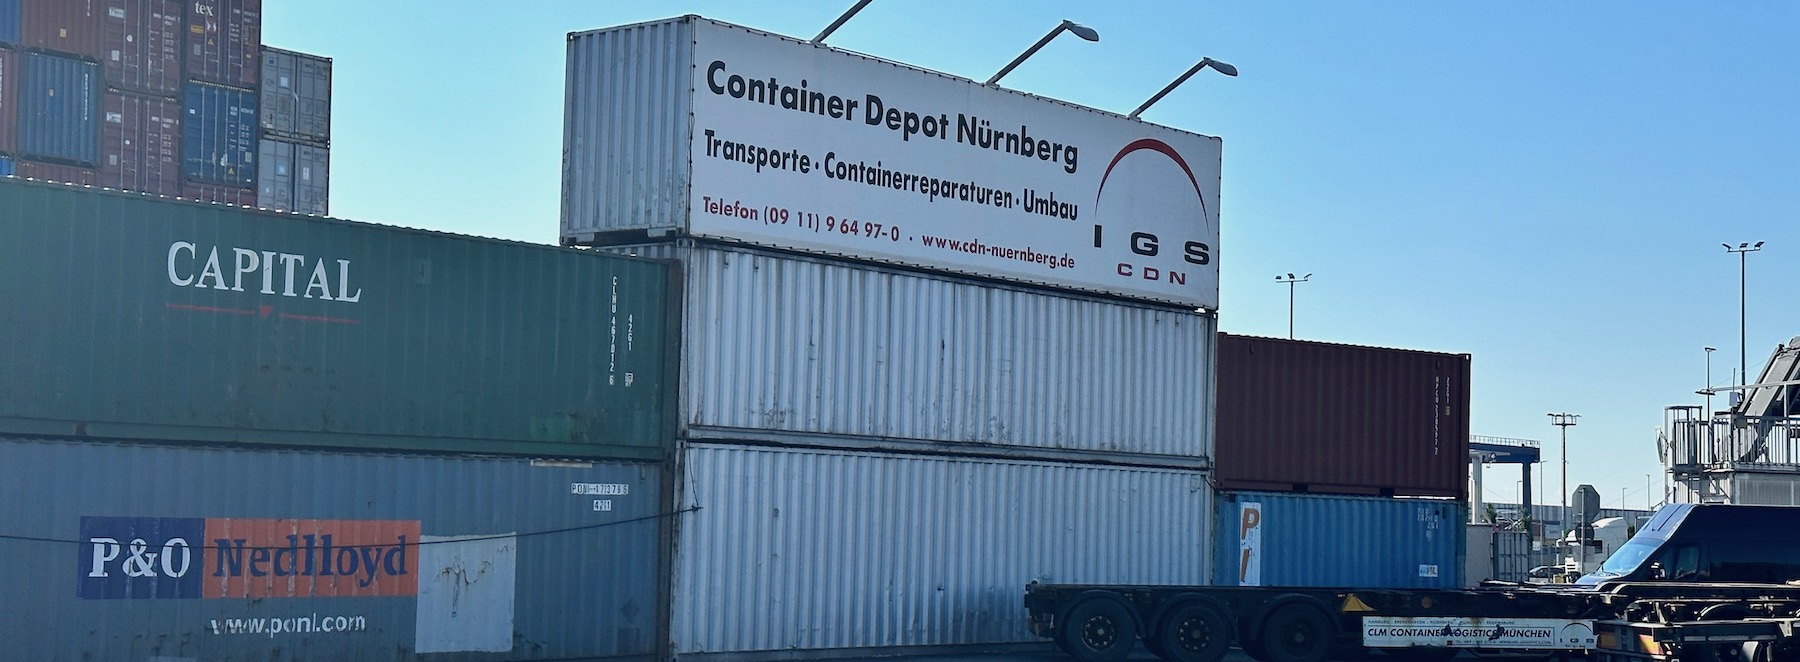 CDN Container Depot